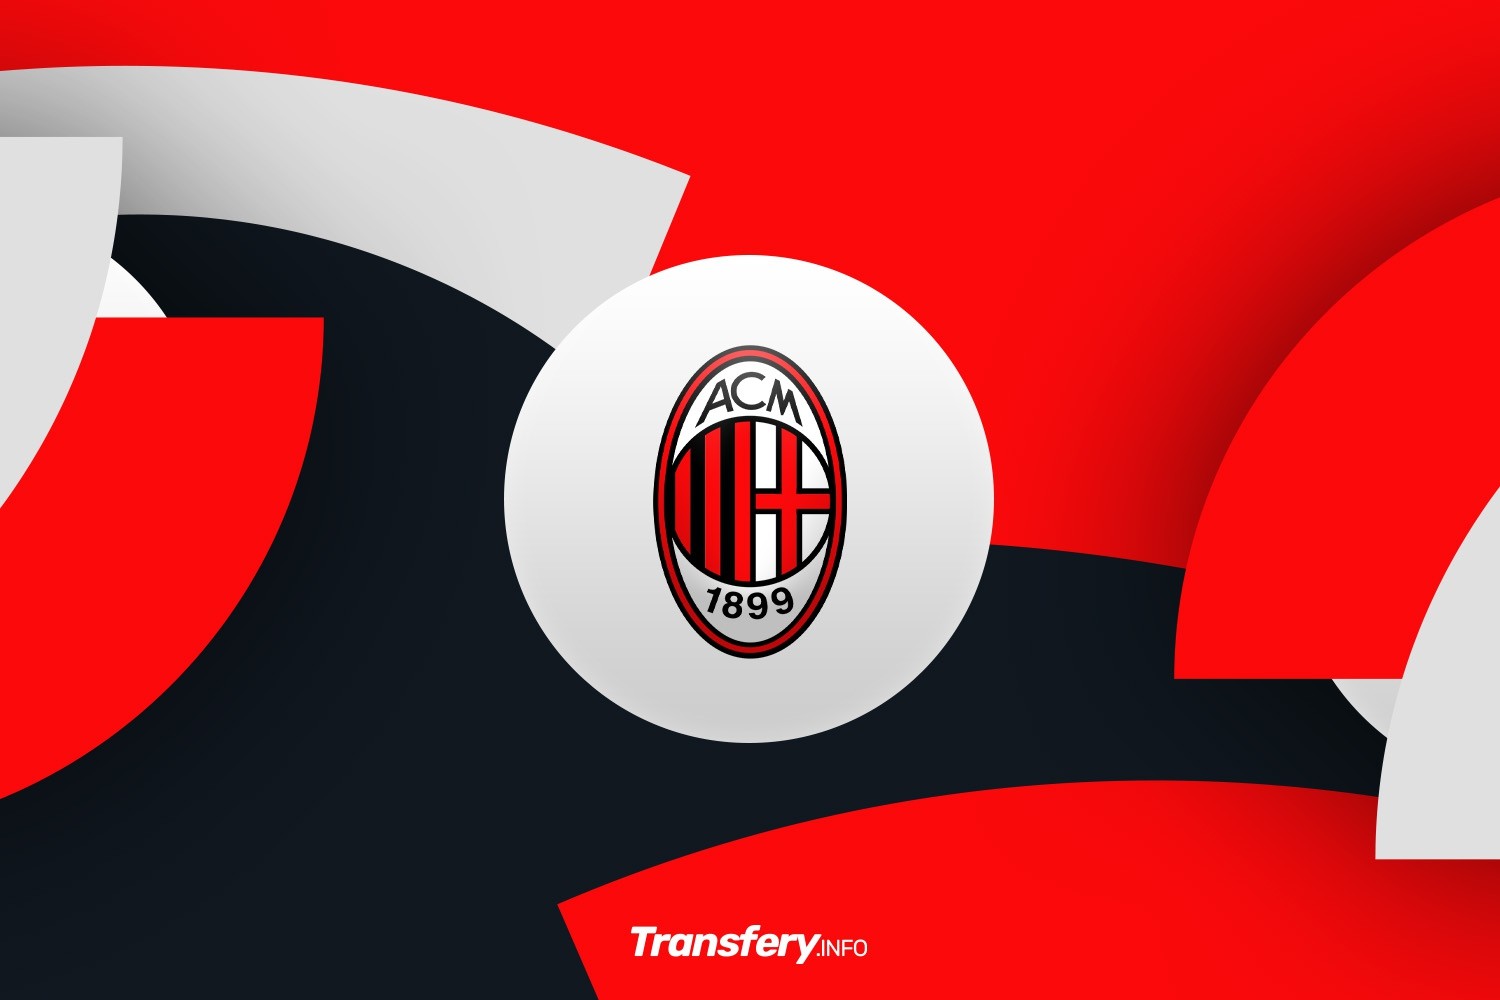 OFICJALNIE: AC Milan wkracza w nową erę. Przejęcie legendarnego klubu zakończone